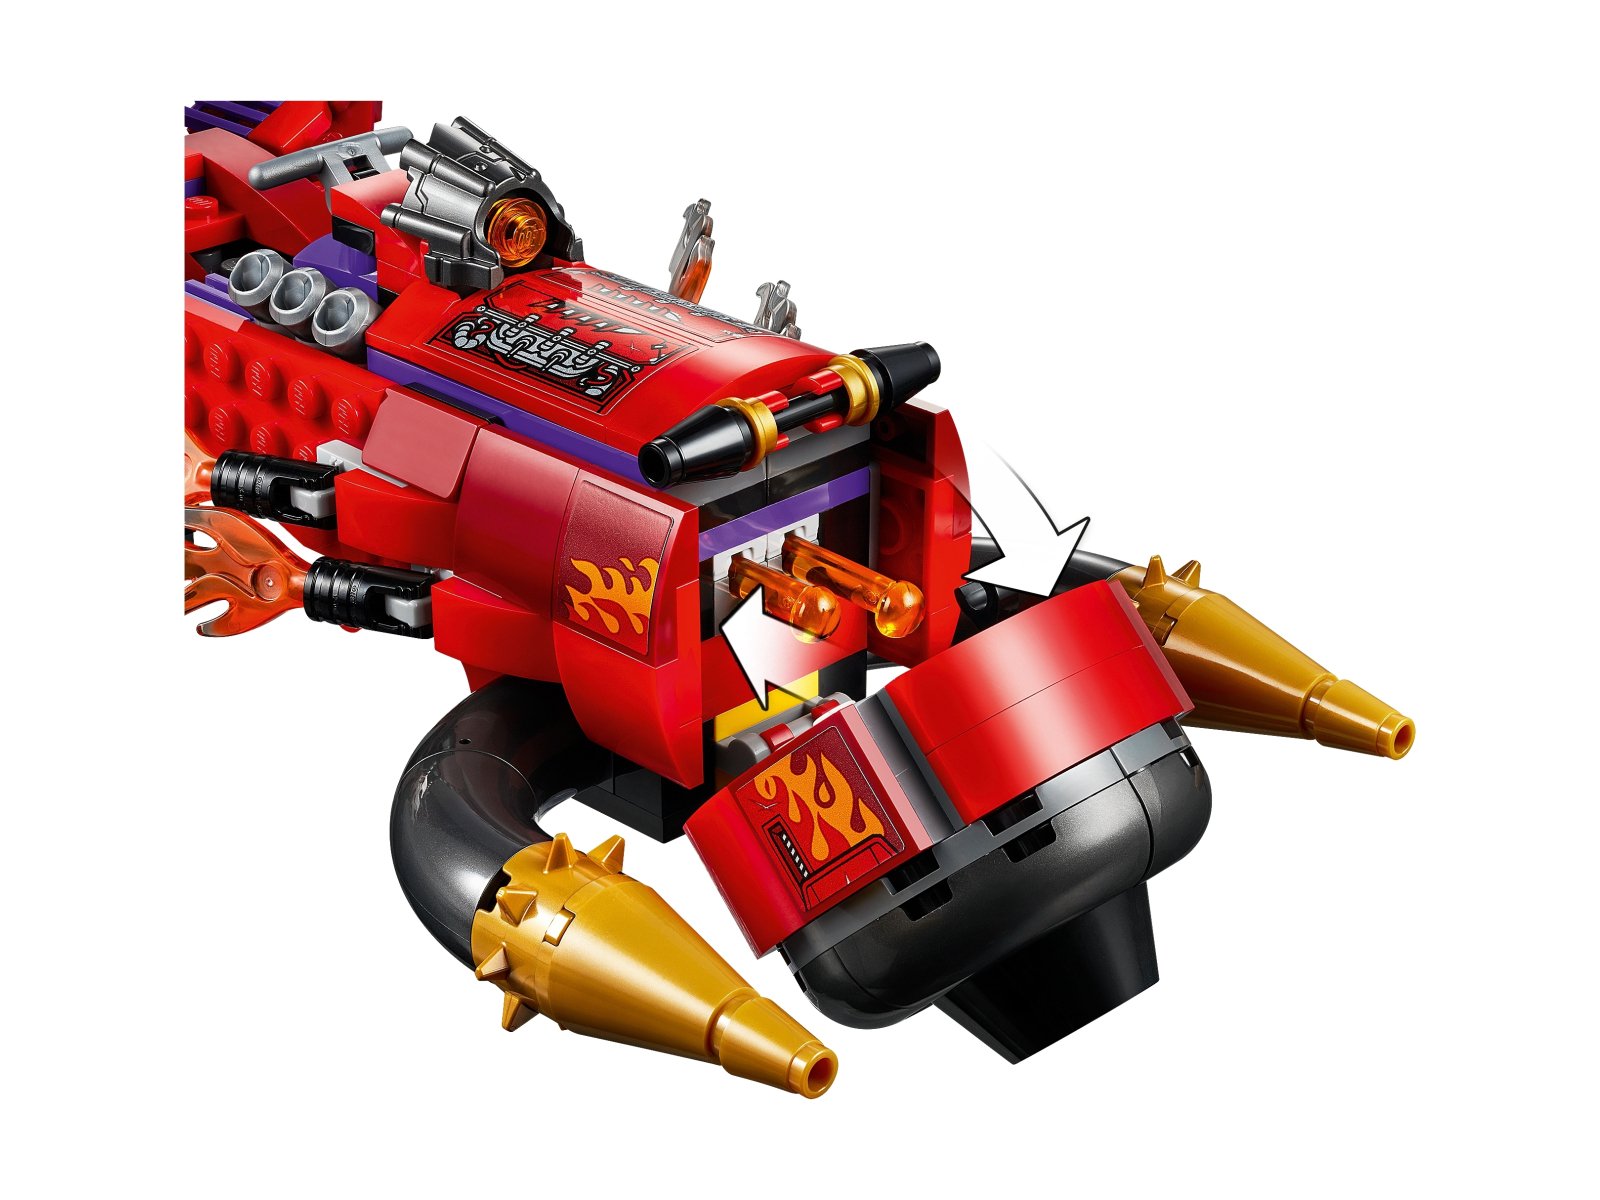 LEGO 80019 Monkie Kid Piekielny odrzutowiec Red Sona